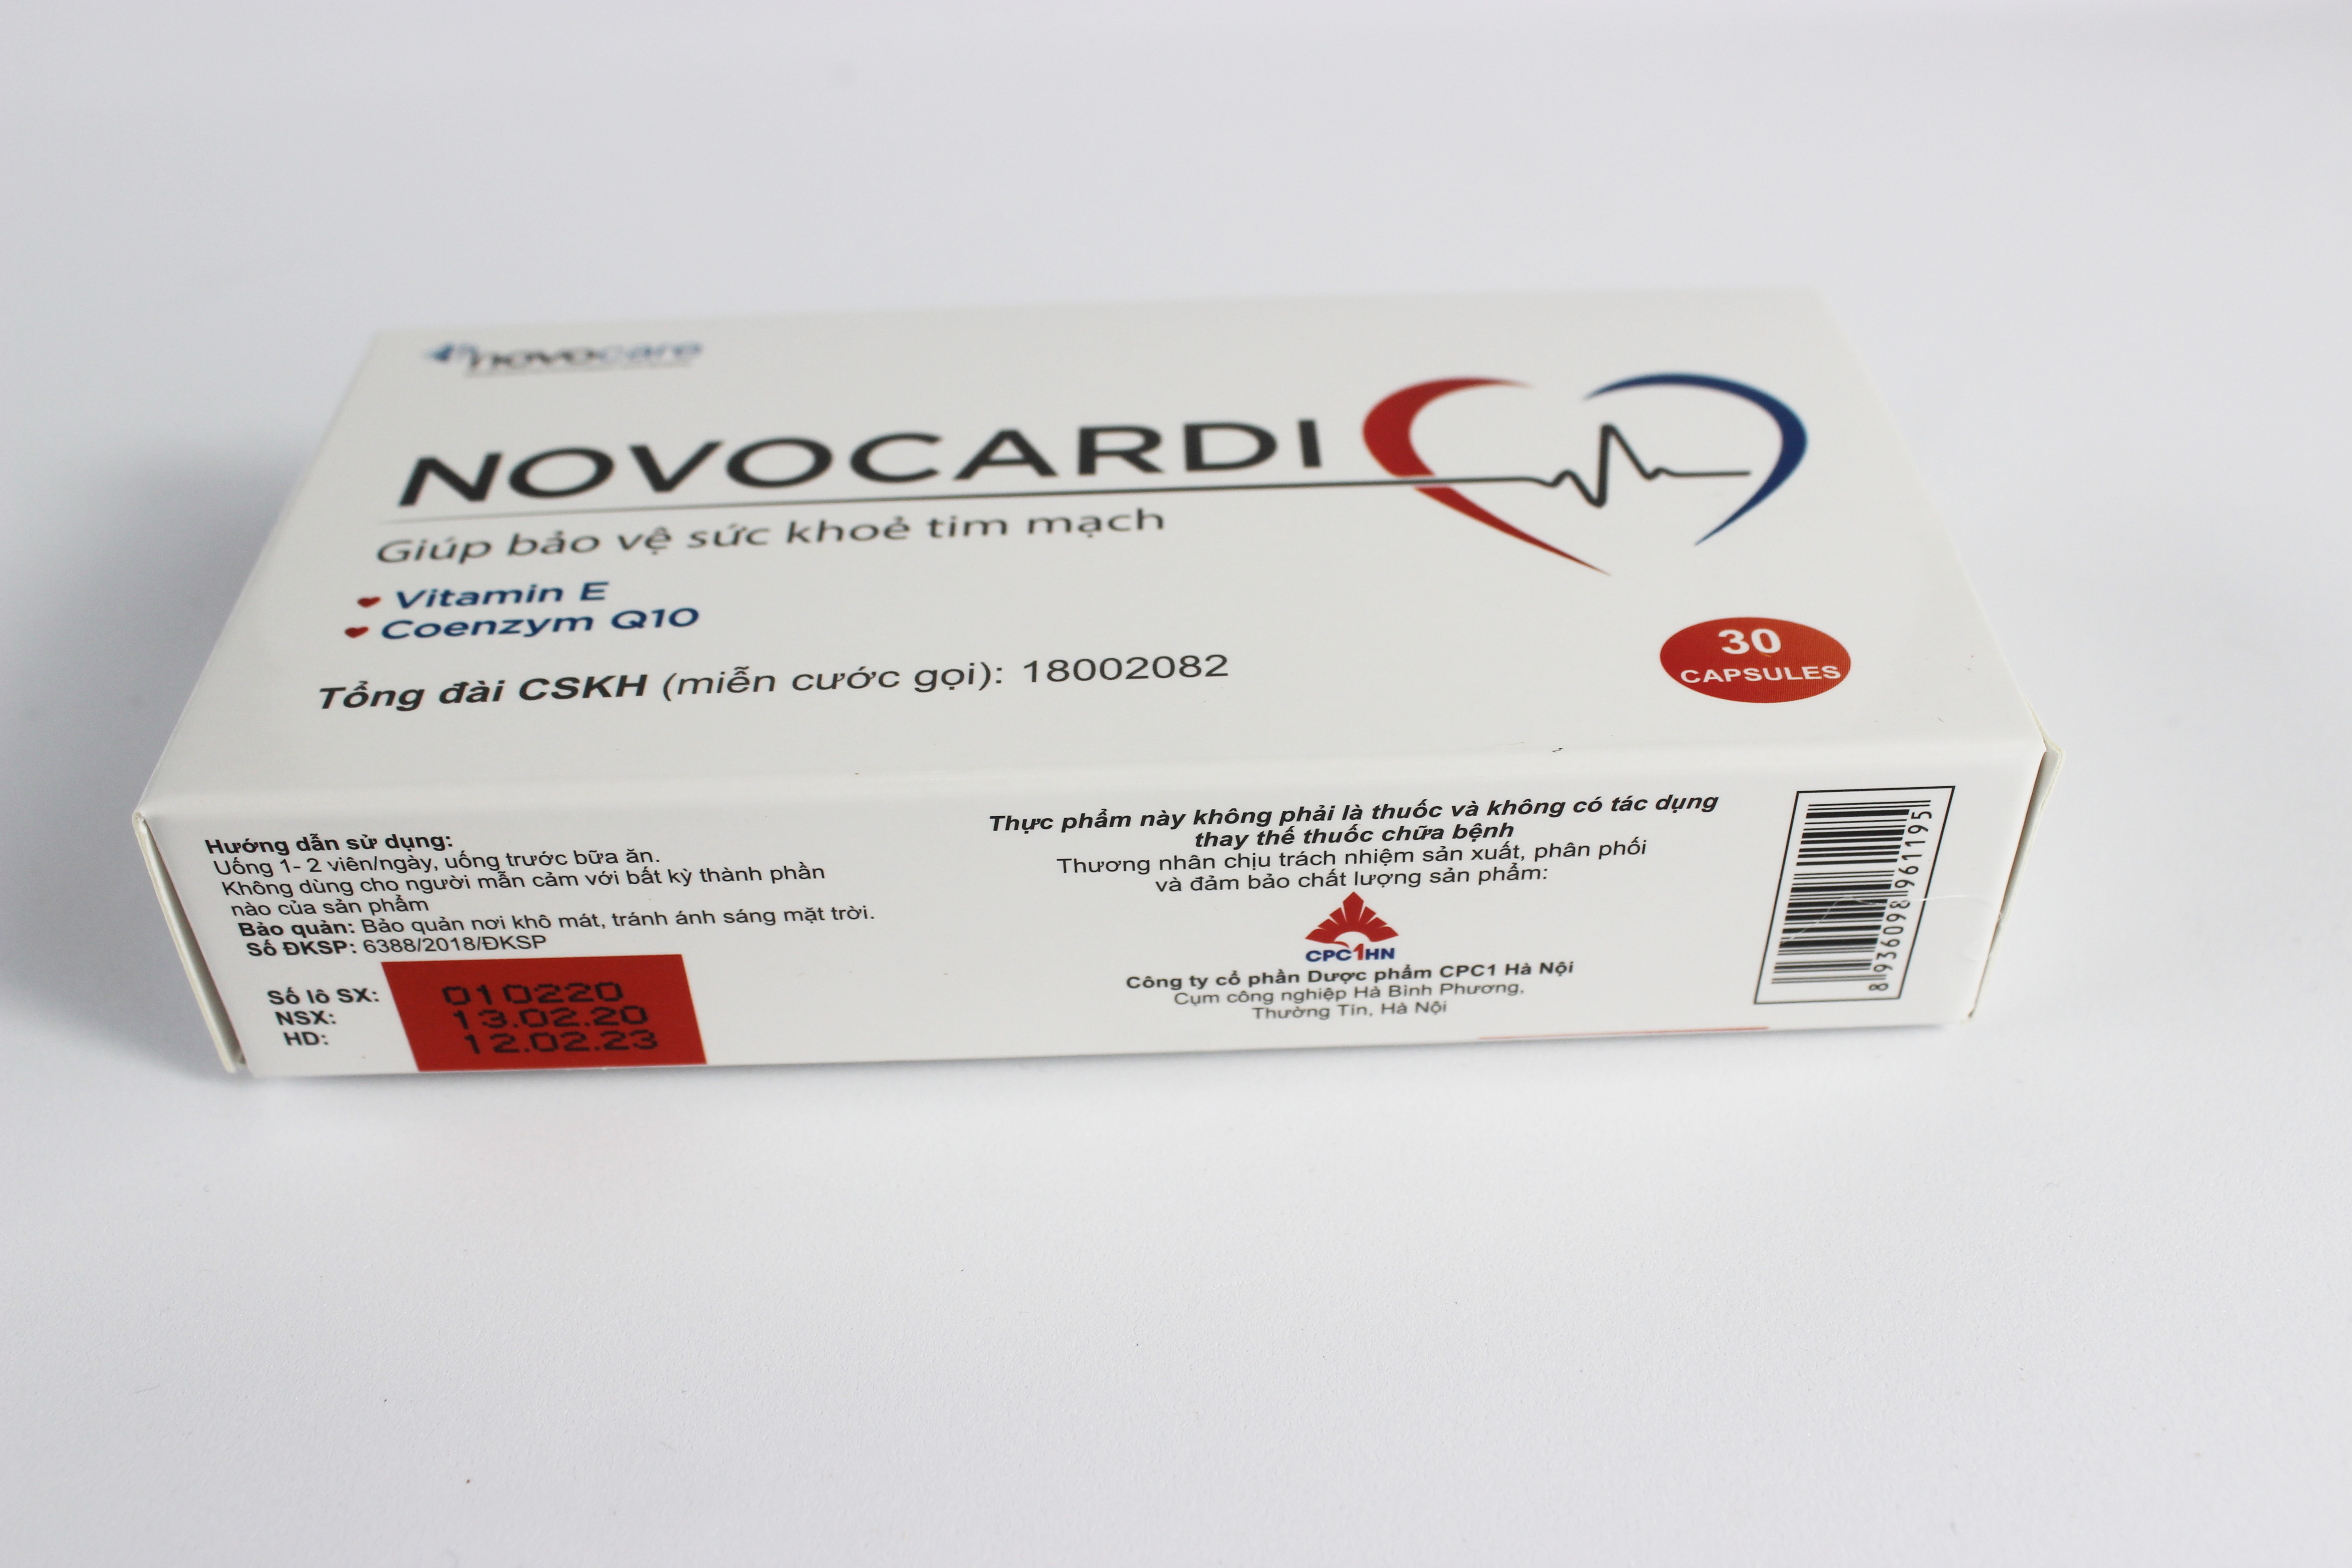 Coenzyme Q10 - NOVOCARDI - Giảm Xơ Vữa Động Mạch, Bảo Vệ Sức Khỏe Tim Mạch, Hỗ Trợ Trong Bệnh Suy Tim, Loạn Nhịp Tim